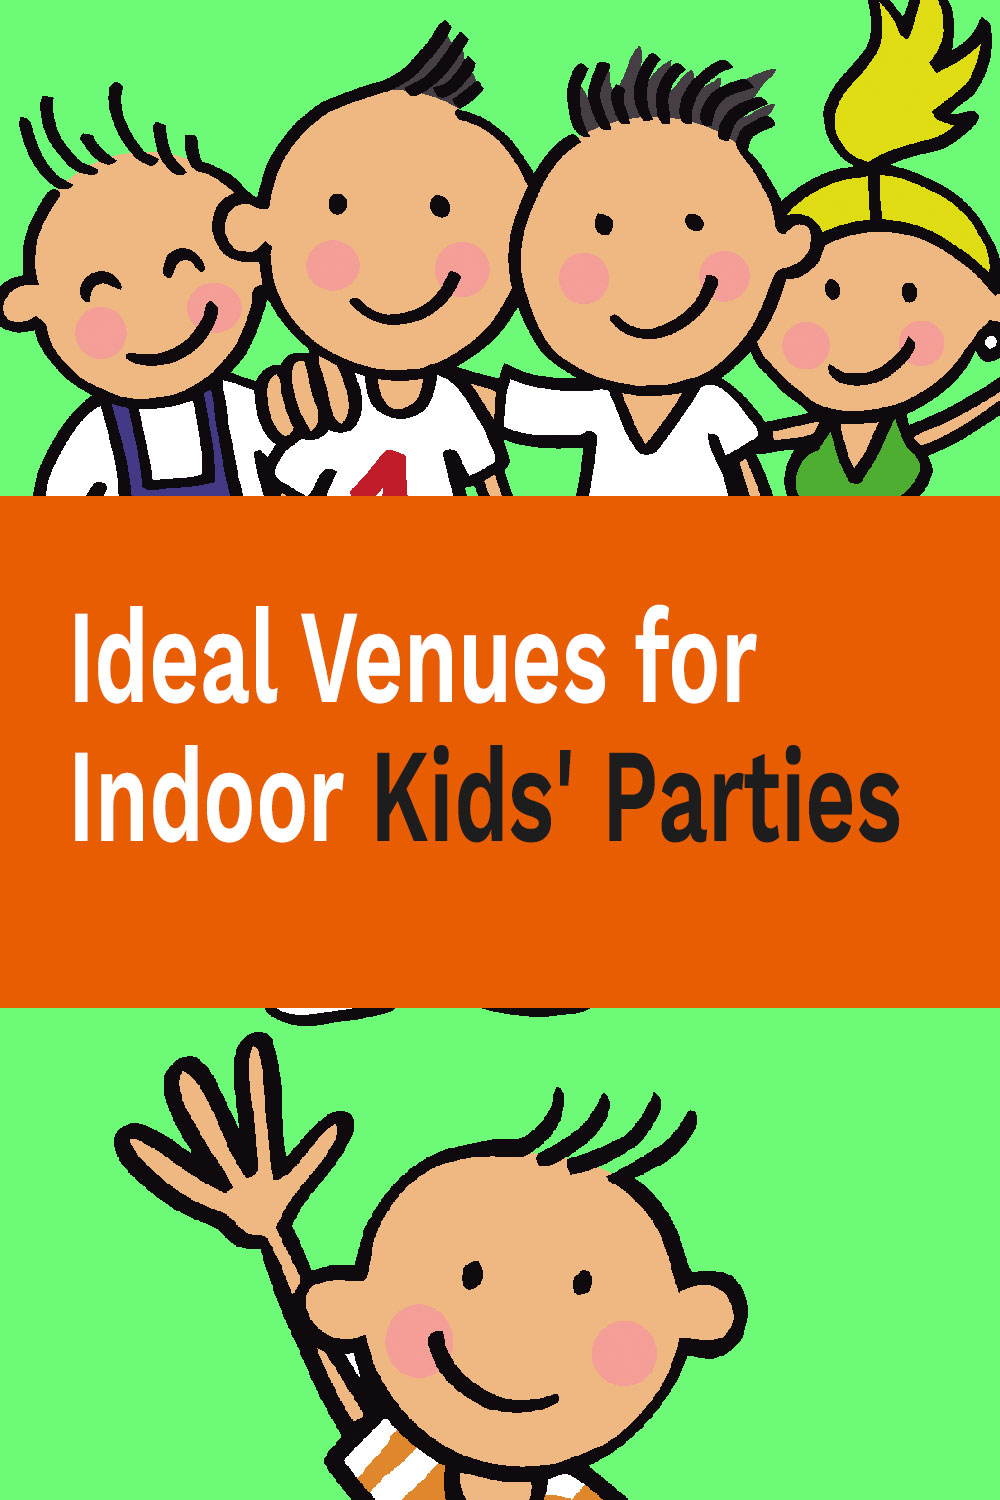 Ideale Veranstaltungsorte für Indoor-Kids-Partys